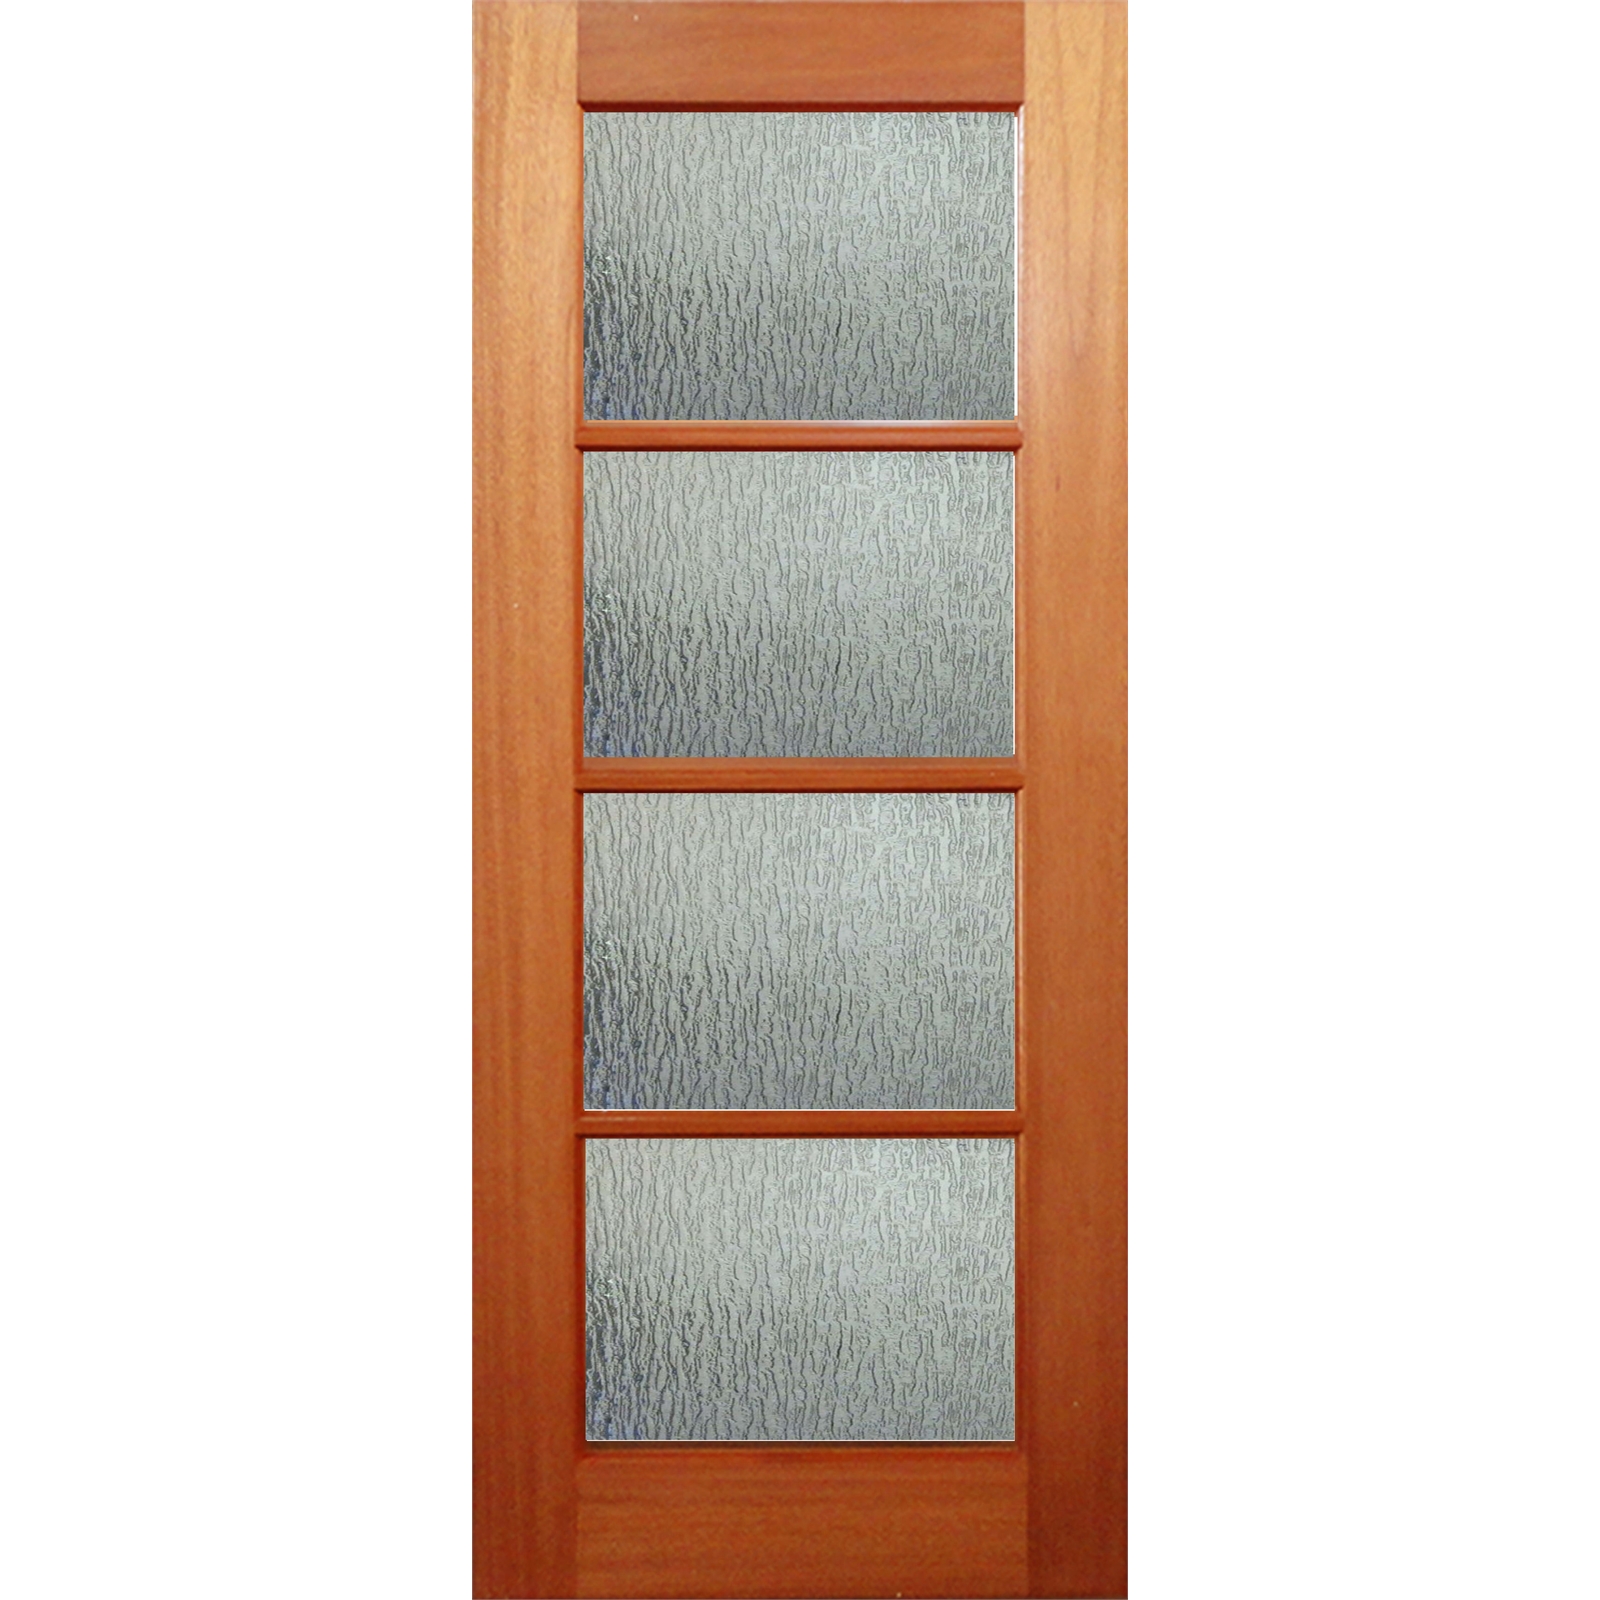 Woodcraft Doors 2040 x 820 x 40mm Lauren Rain Safety Glass Entrance Door